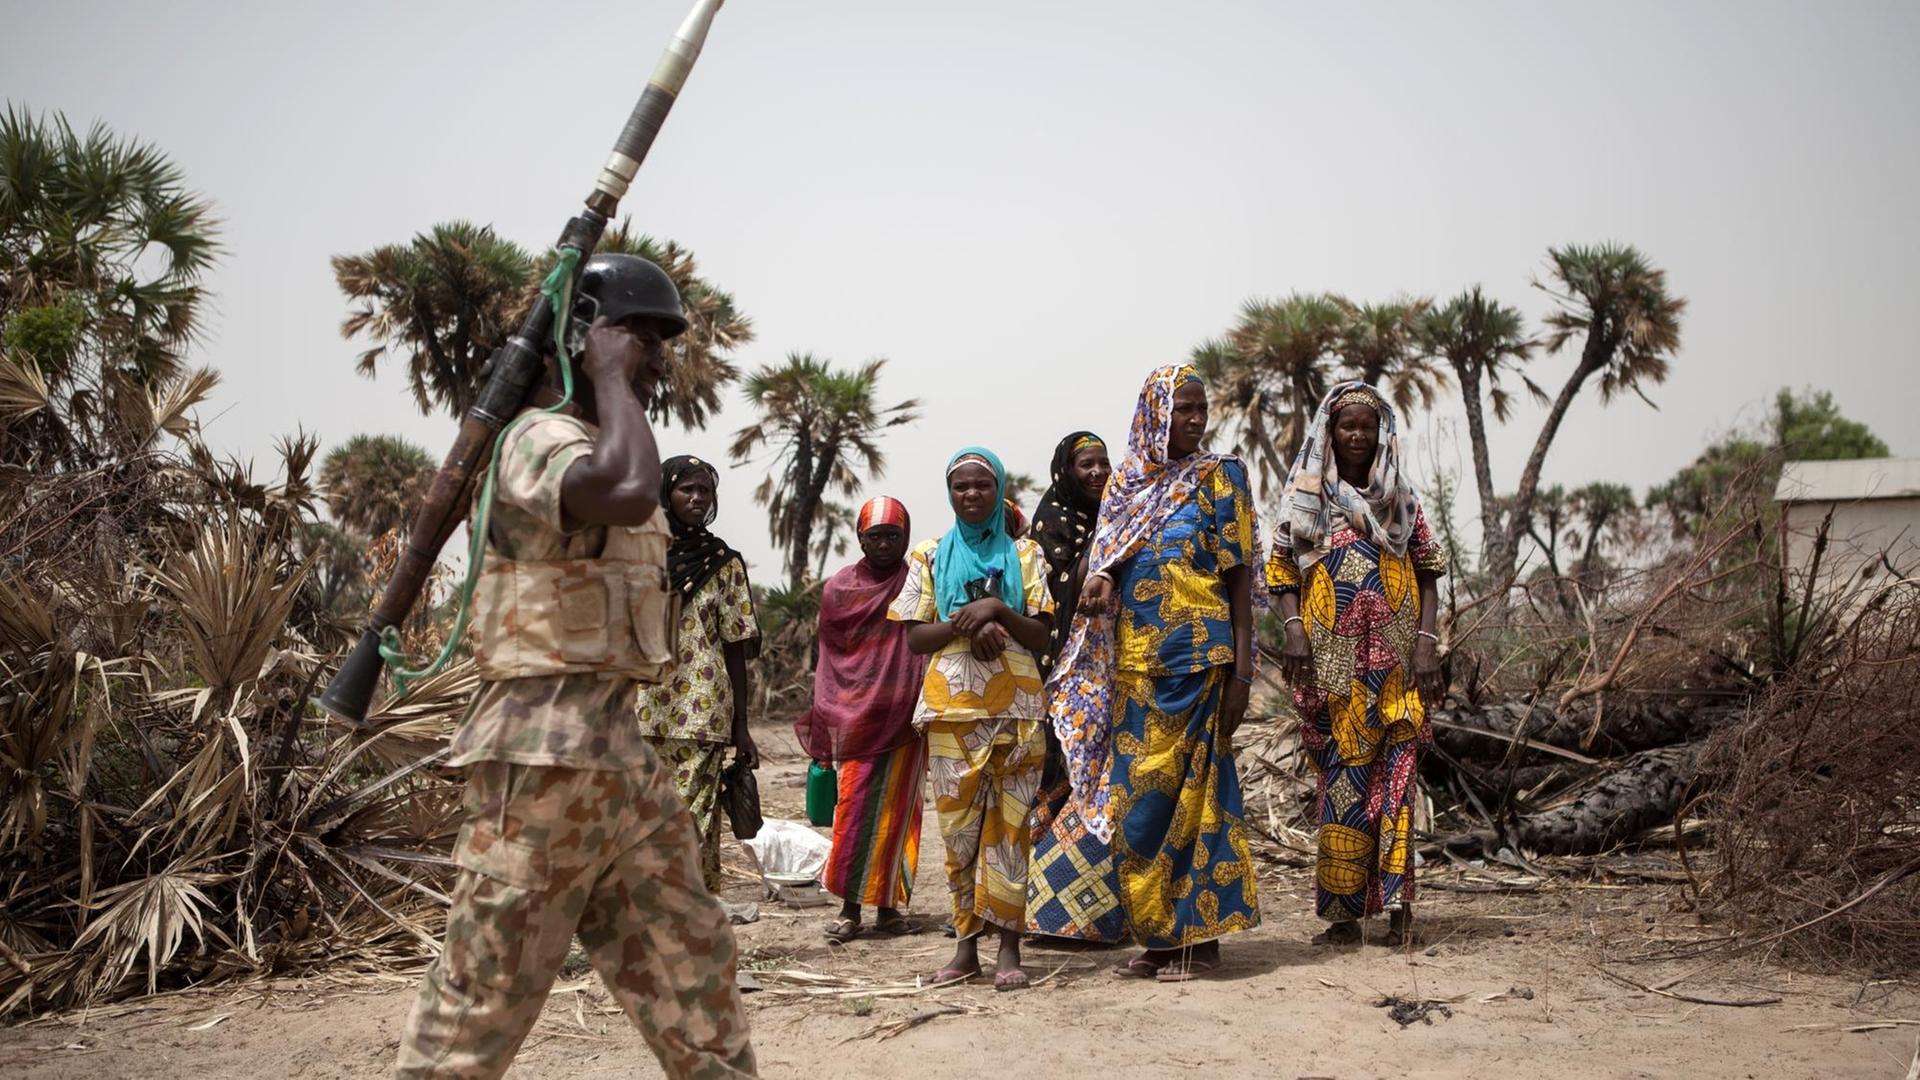 Soldat läuft mit einer reaktiven Panzerbüchse an der Schulter an einer Gruppe nigerianischer Frauen vorbei